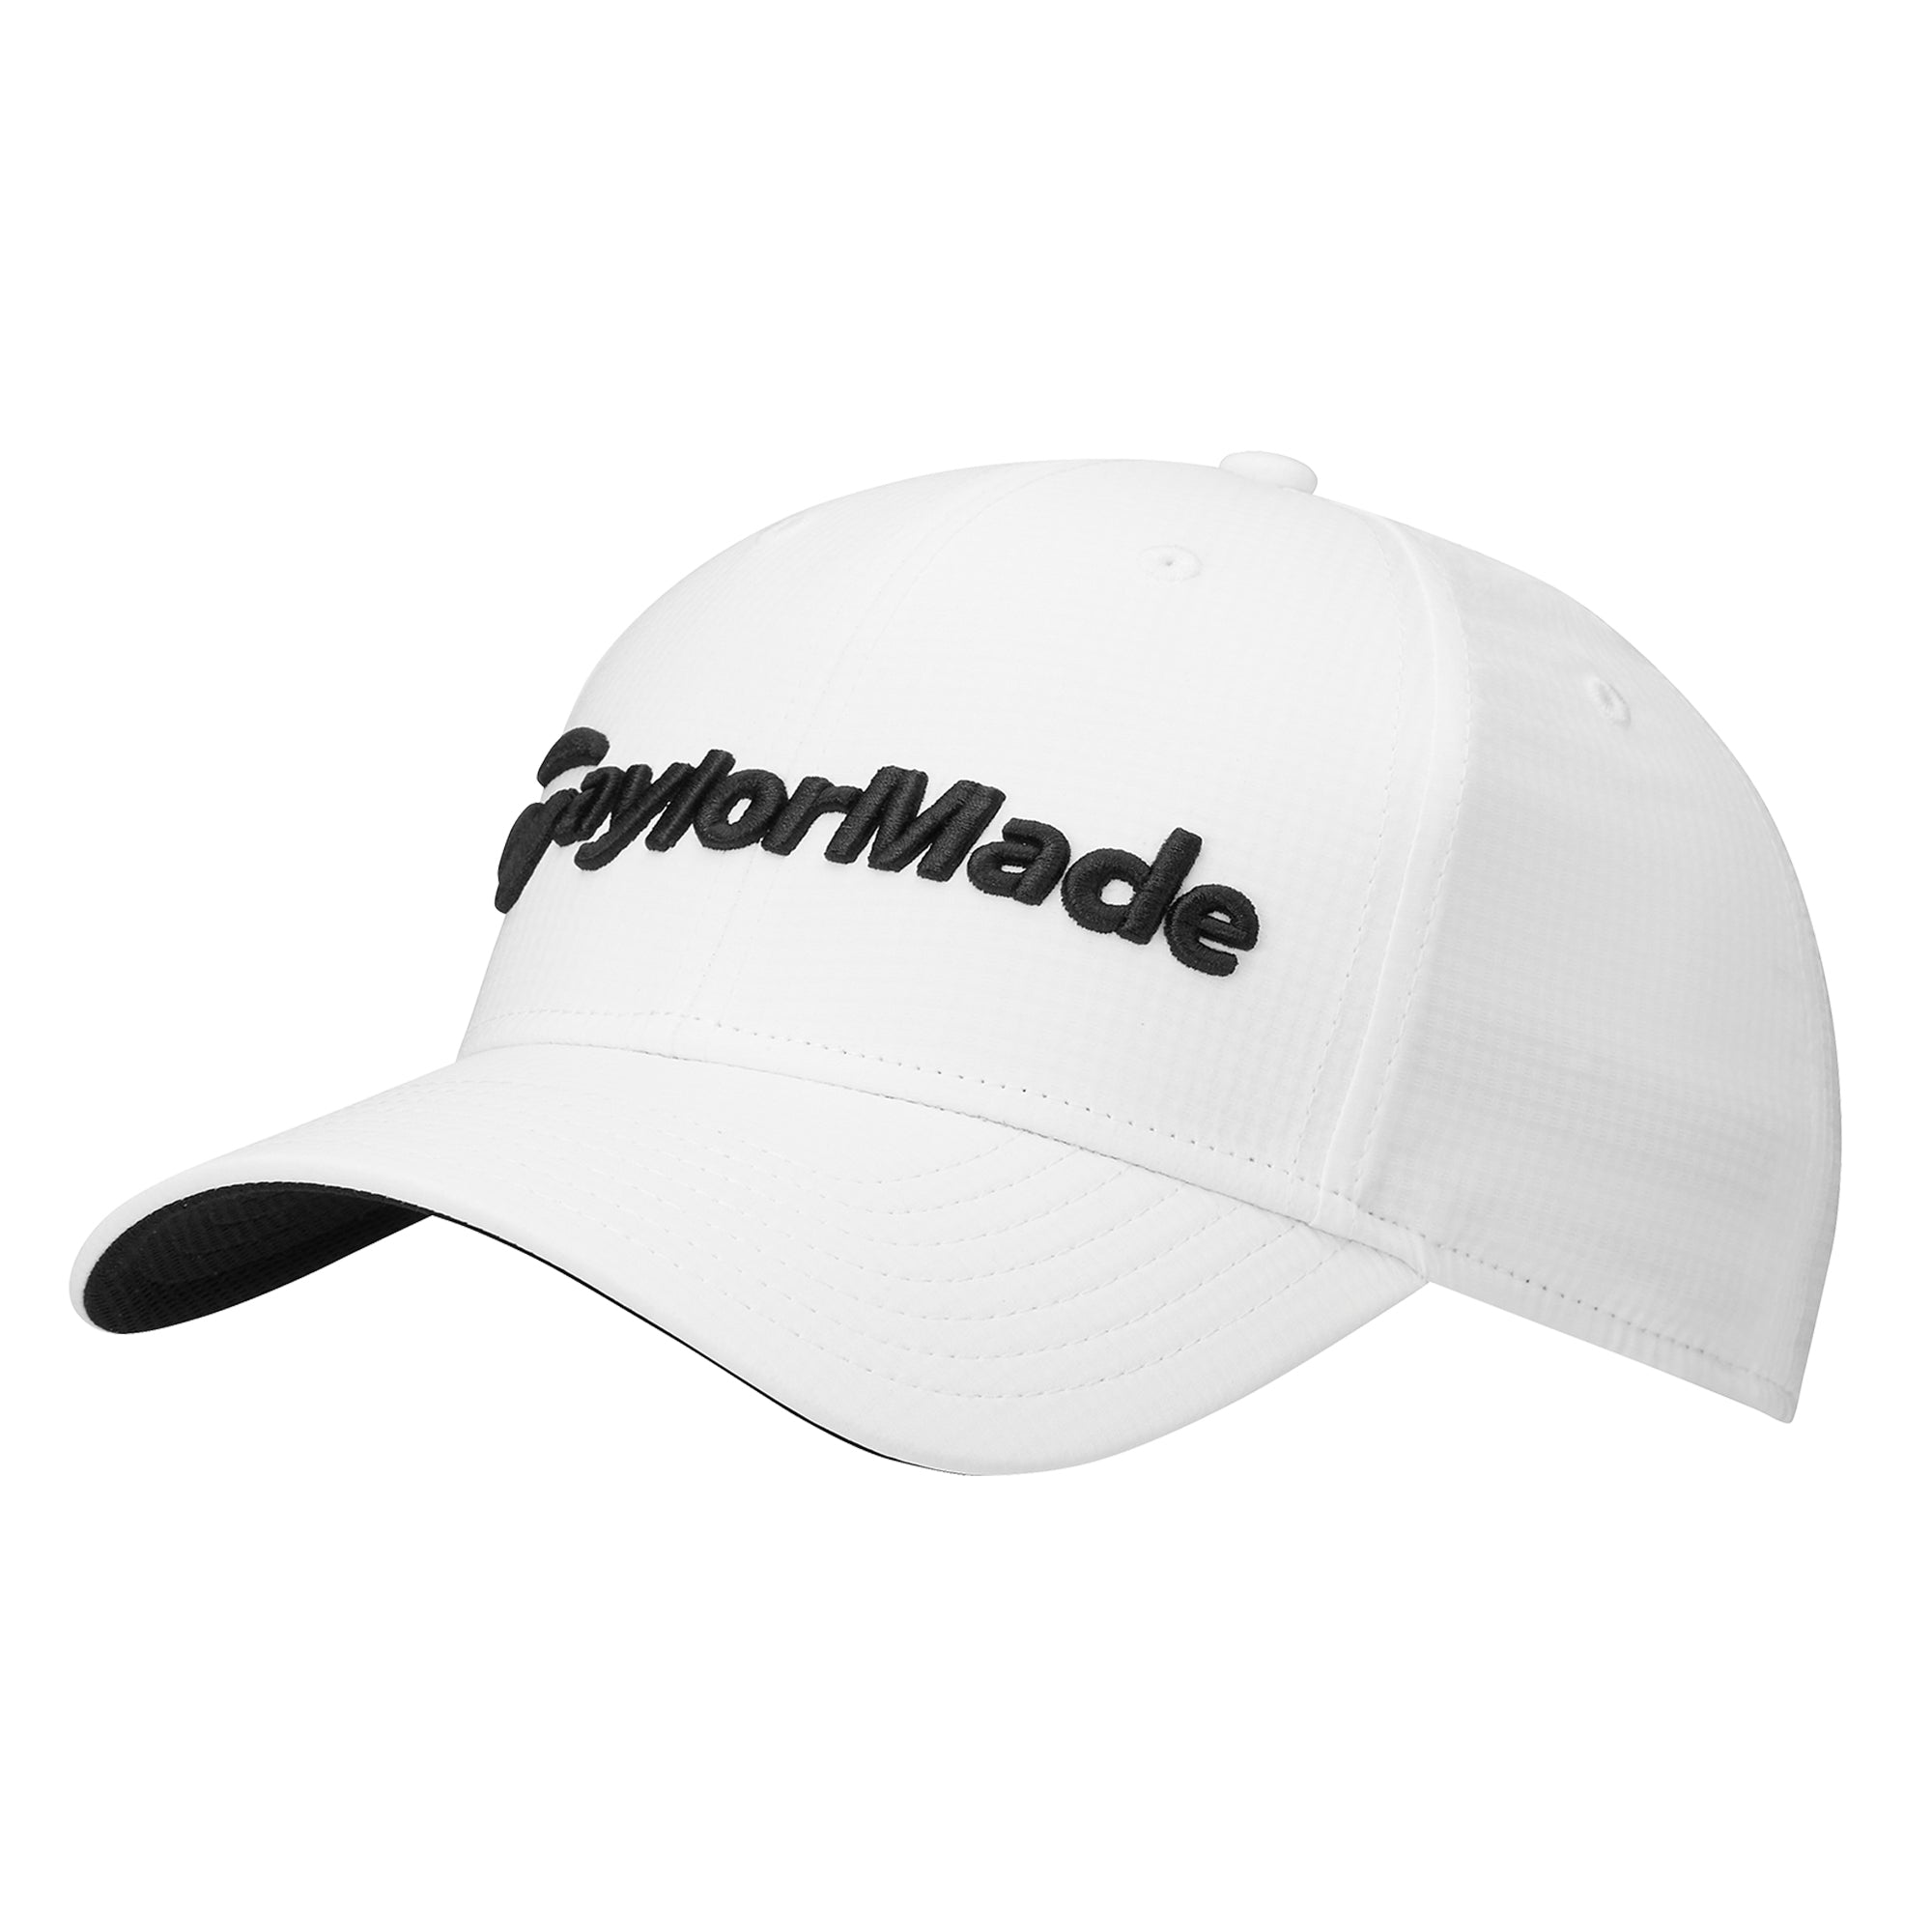 TaylorMade Golf Radar Cap